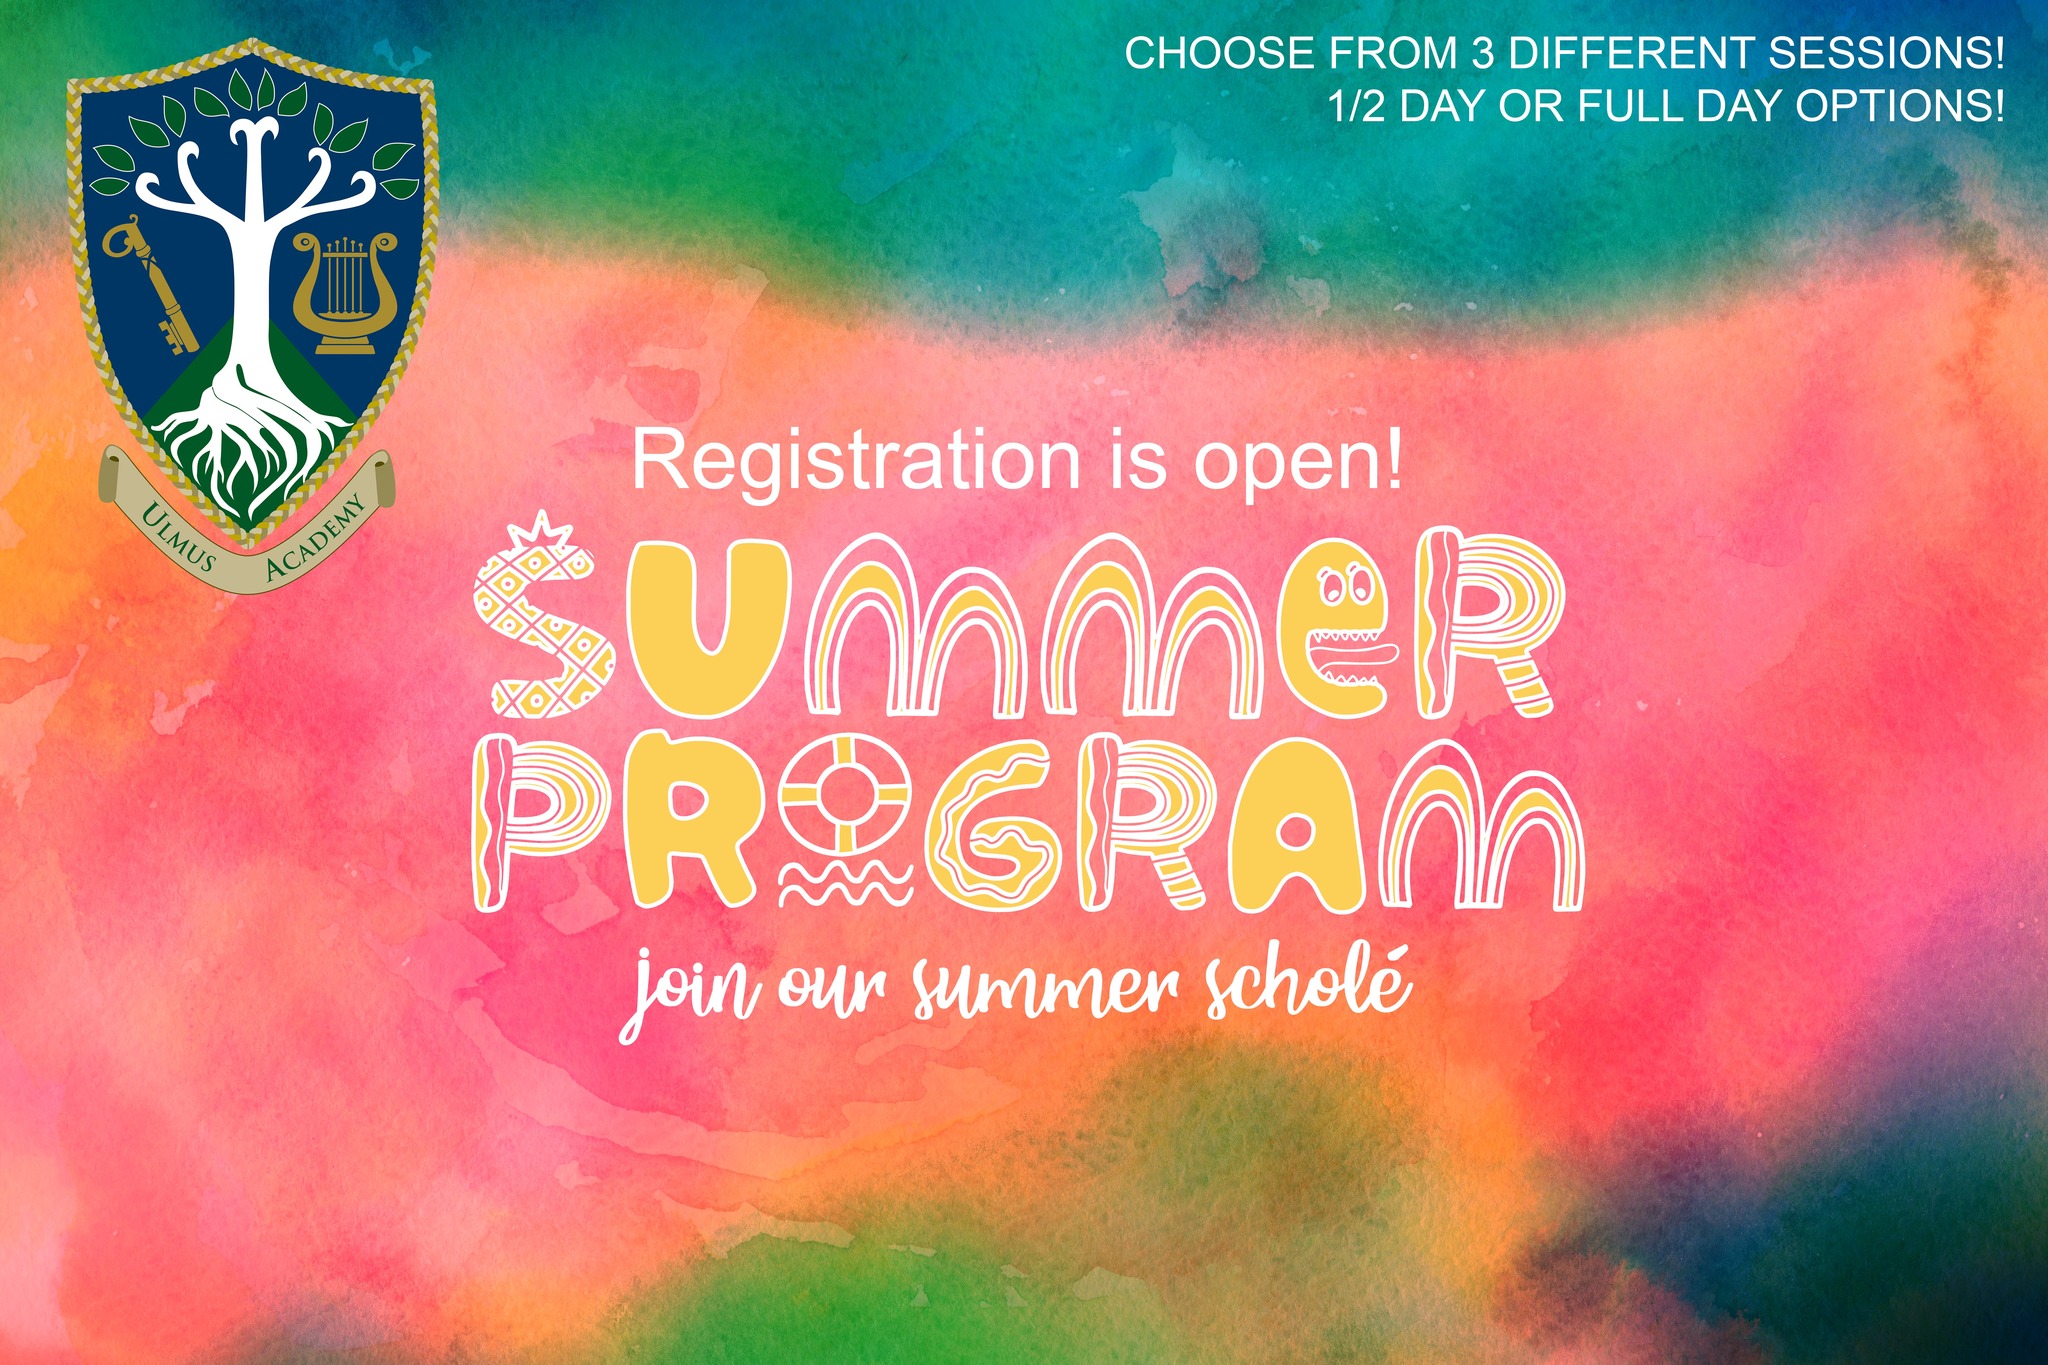 Summer Program: Join our Summer Scholé